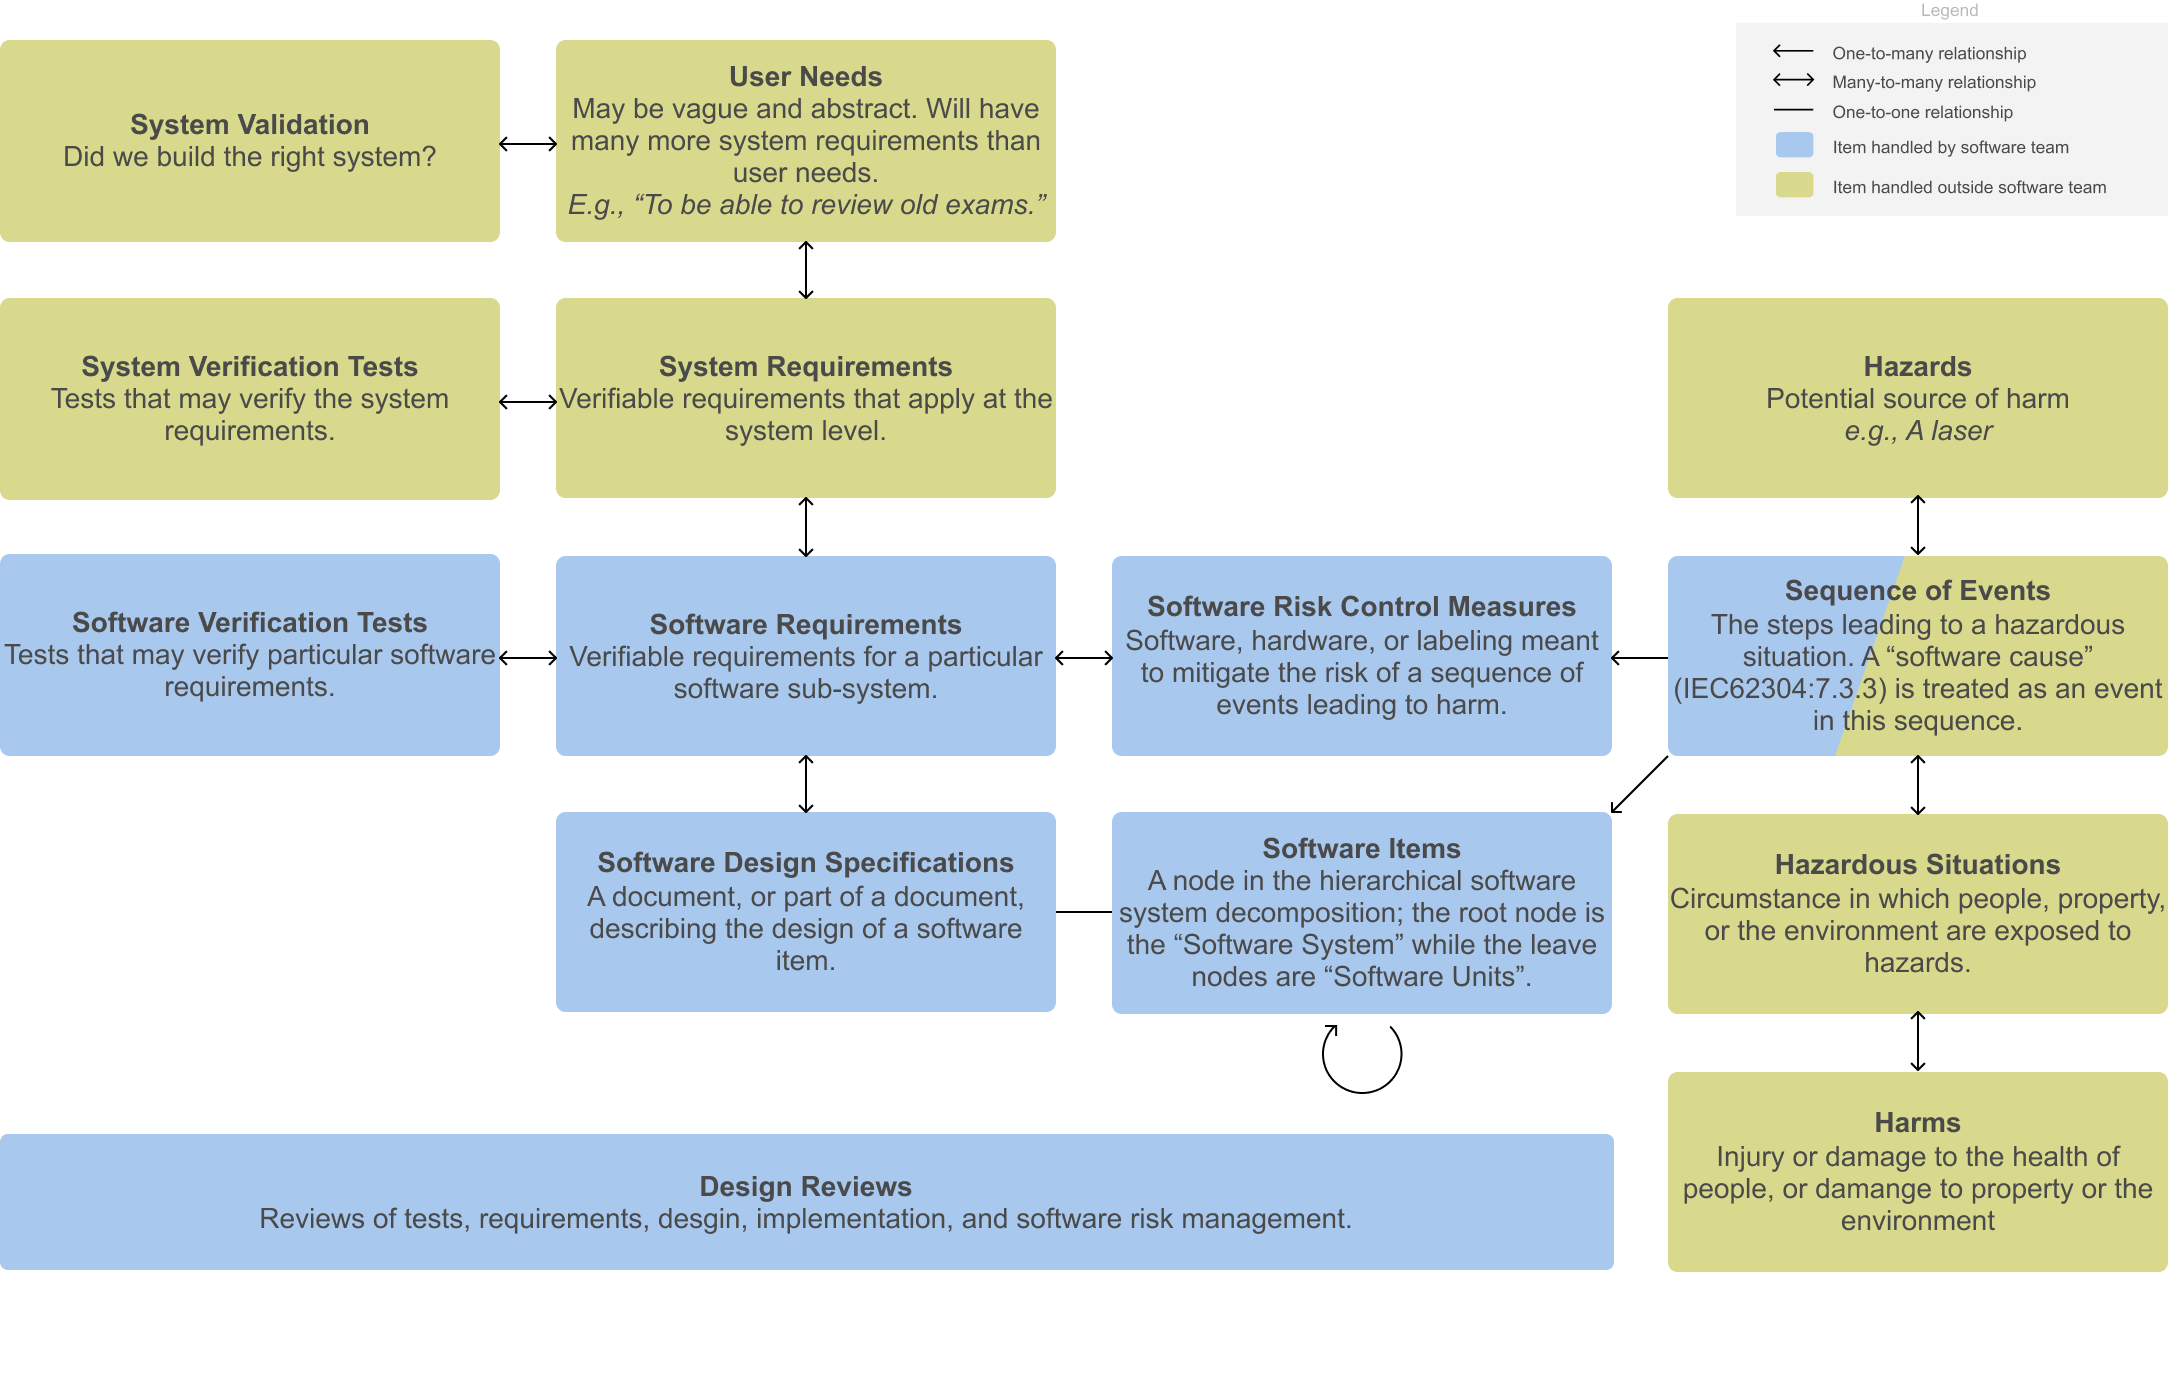 An entity diagram showing key IEC 62304 documentation items